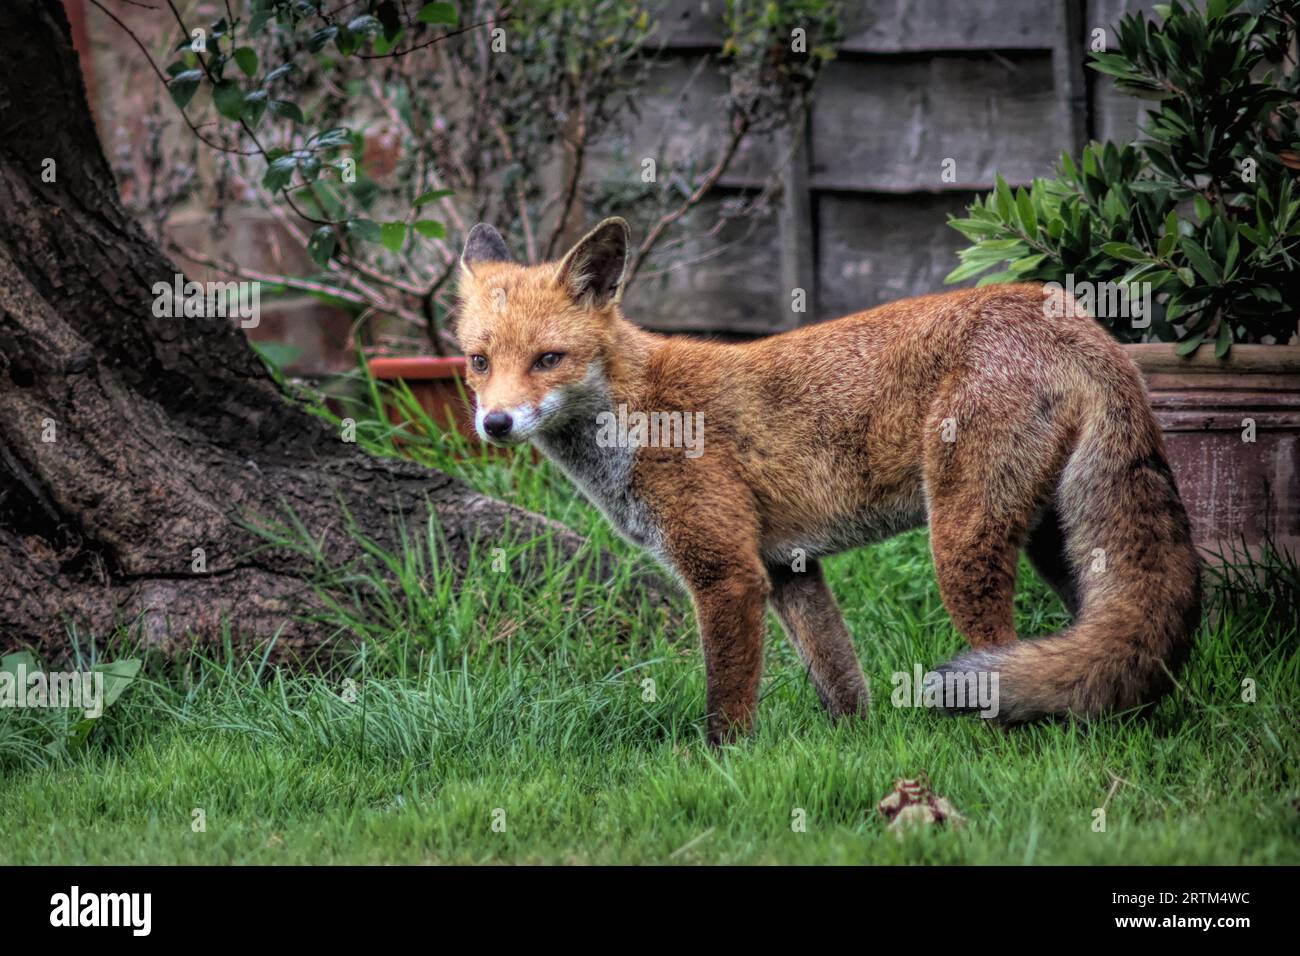 Ein entzückender Fuchs, der ruhig durch einen üppigen grünen begrünten Hinterhof läuft Stockfoto